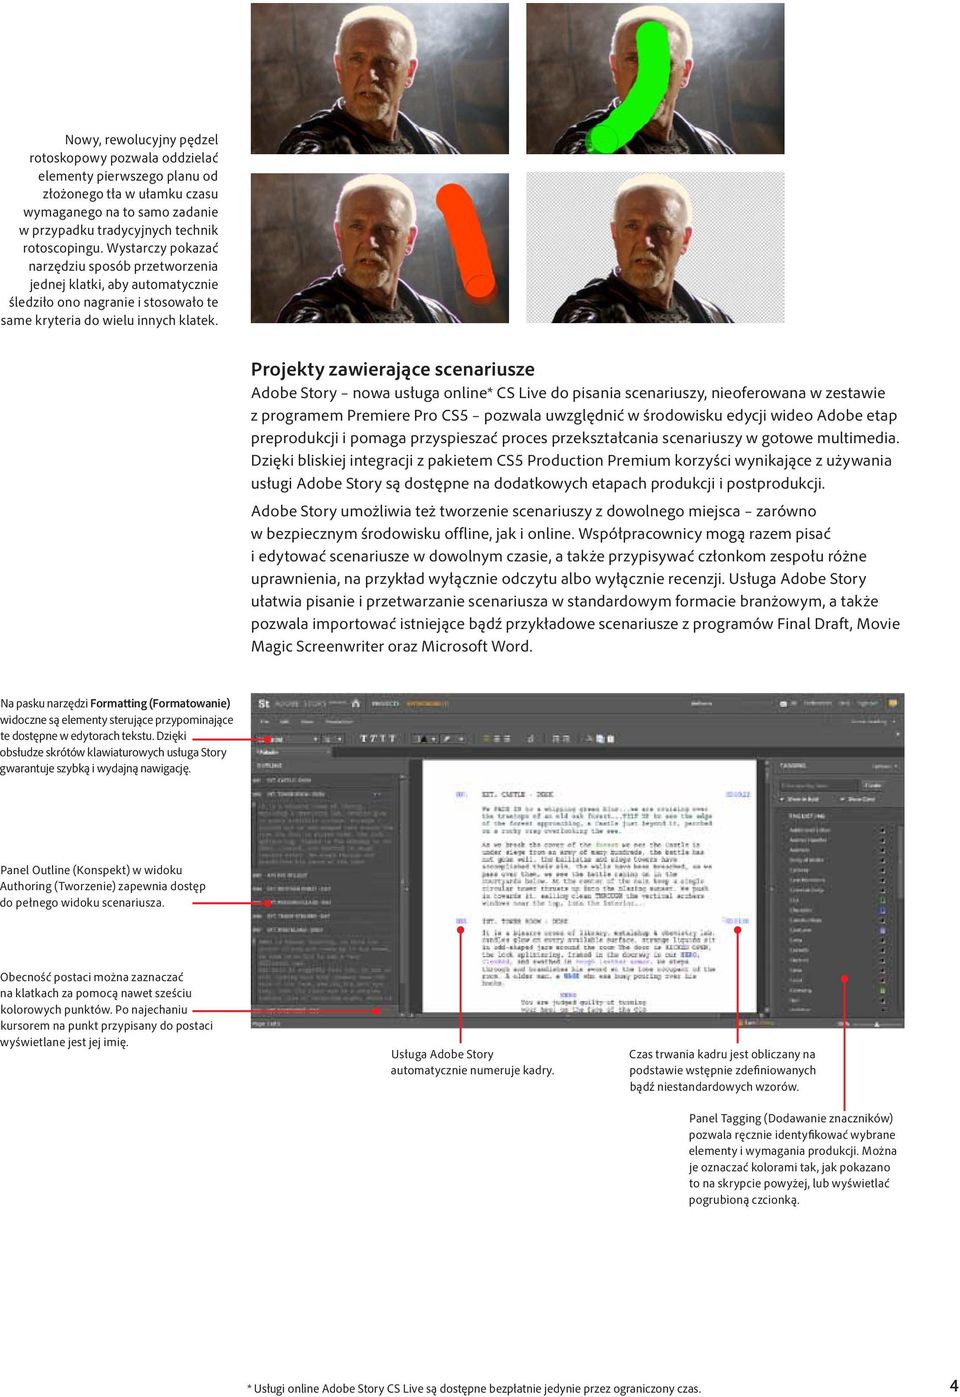 Projekty zawierające scenariusze Adobe Story nowa usługa online* CS Live do pisania scenariuszy, nieoferowana w zestawie z programem Premiere Pro CS5 pozwala uwzględnić w środowisku edycji wideo